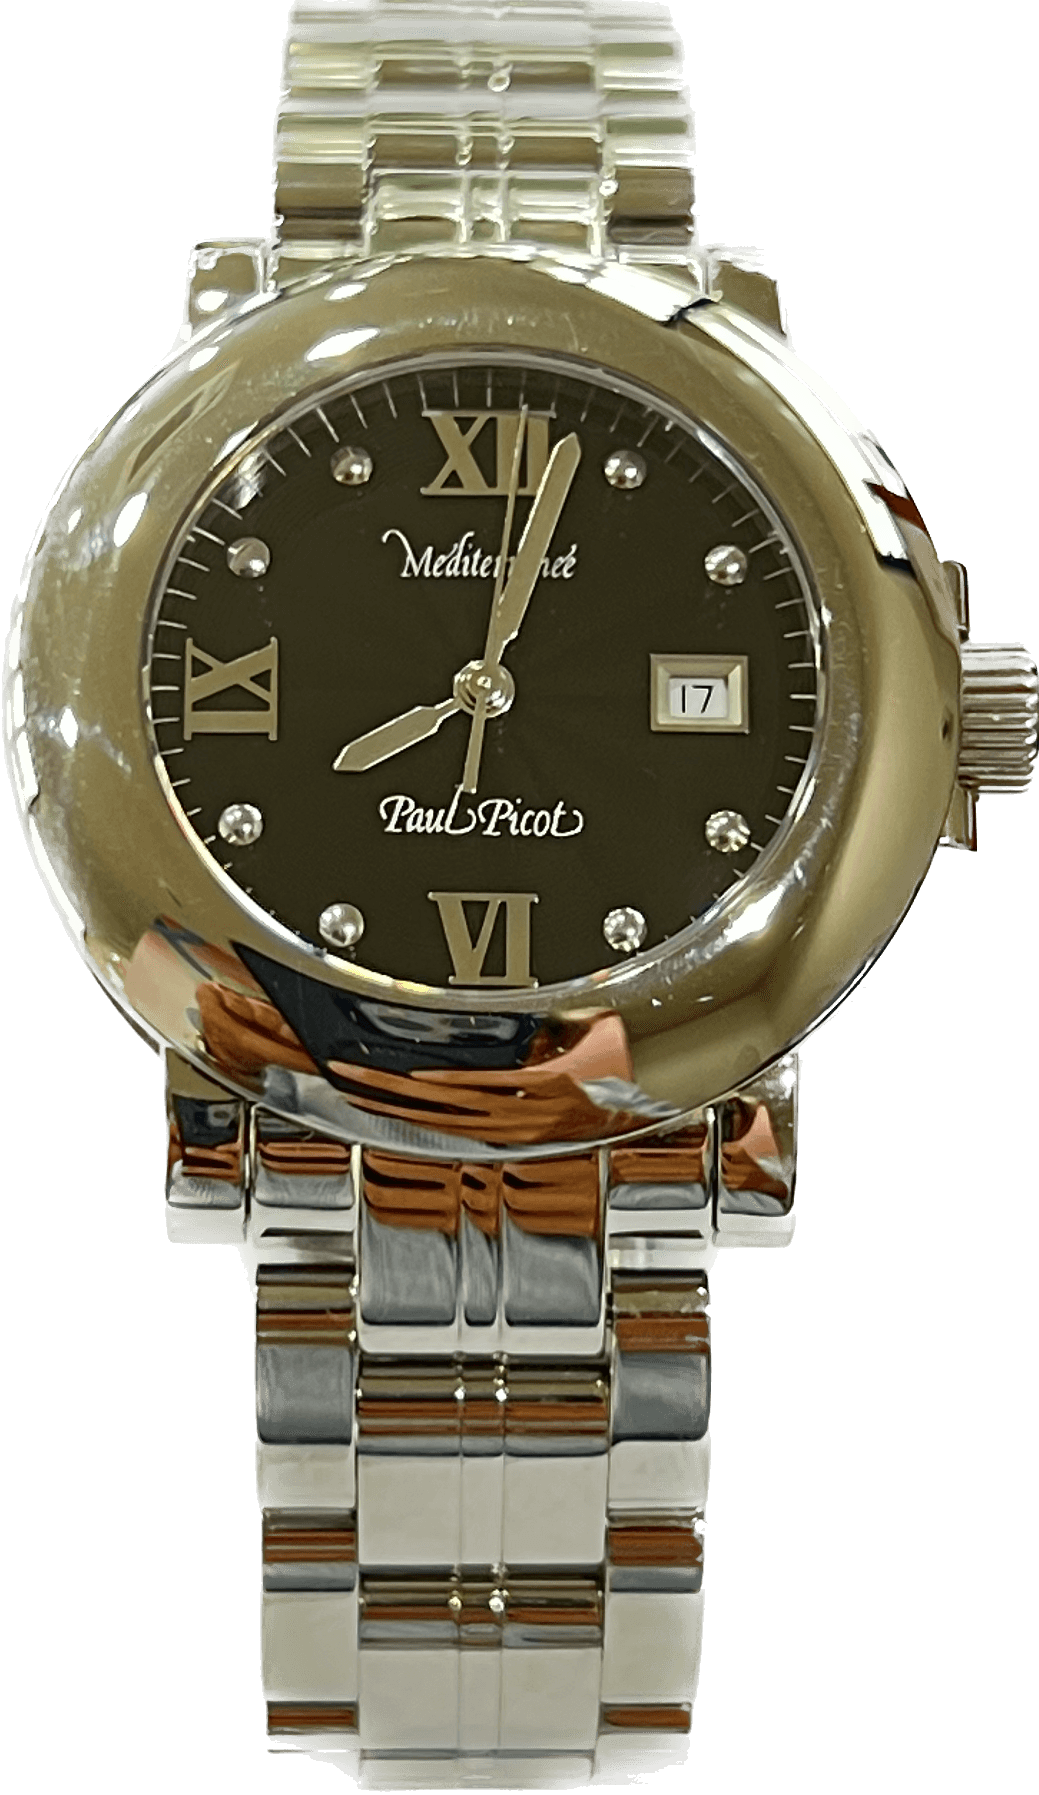 Paul Picot orologio Mediterranee' 36mm nero quarzo acciaio 4108 NE - Capodagli 1937